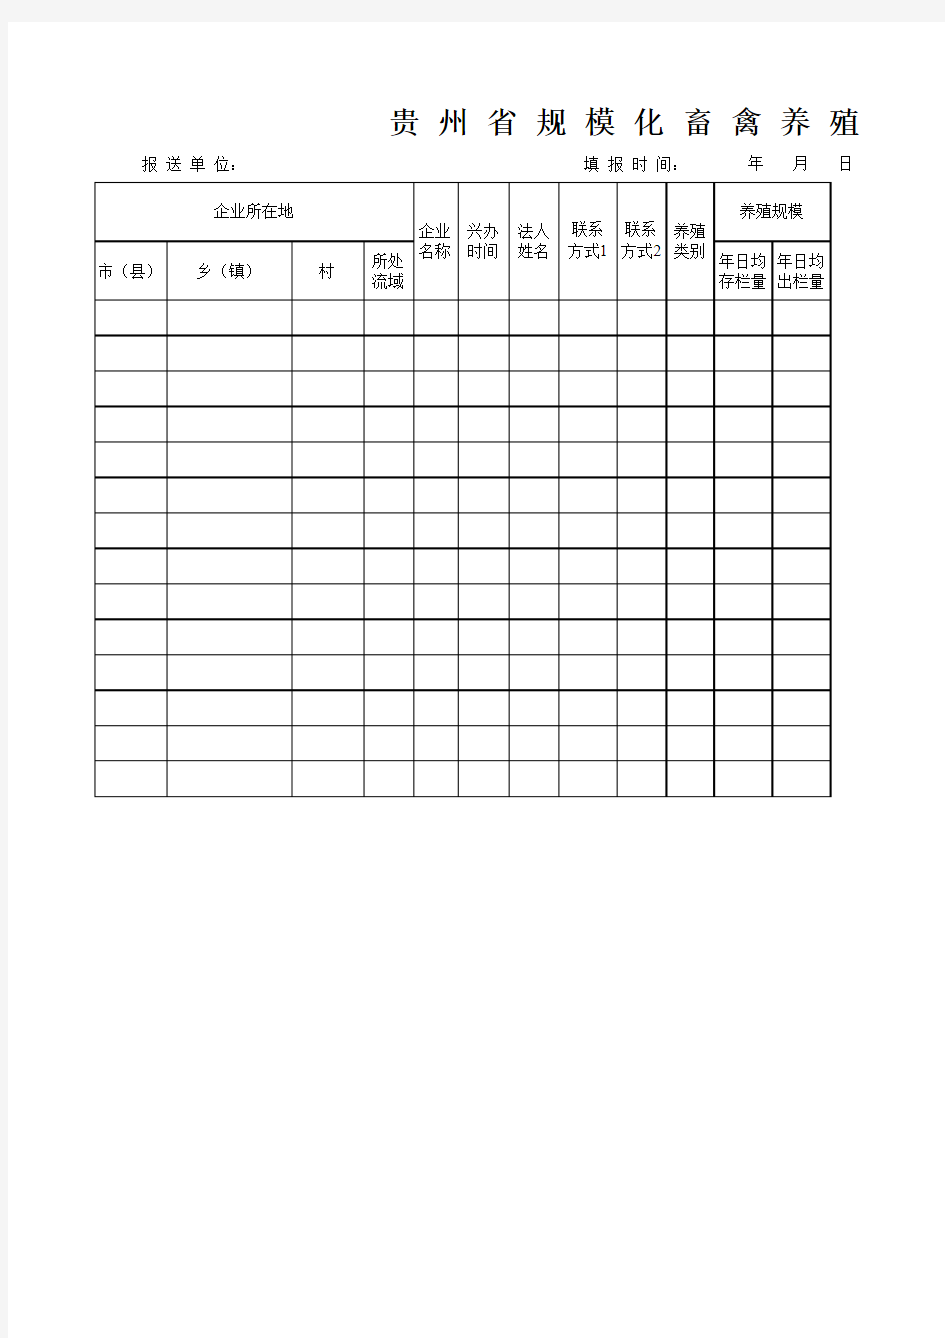 贵州省规模化畜禽养殖企业情况统计表